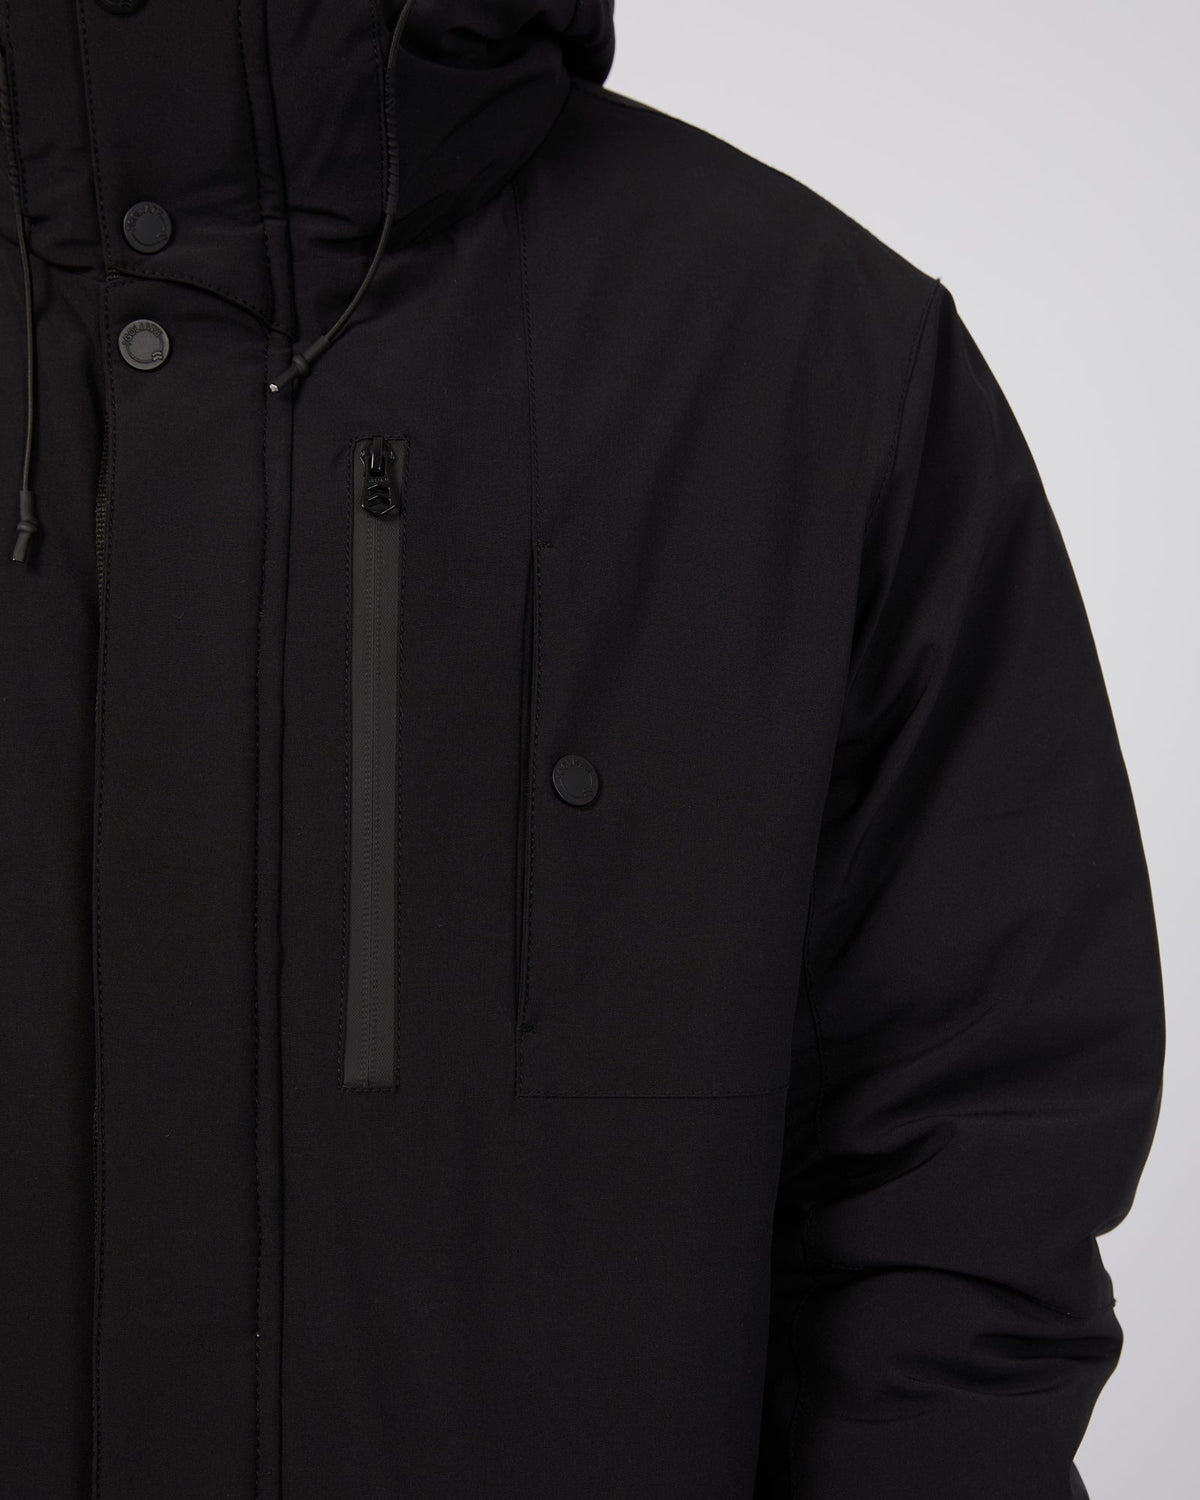 St. Goliath-Sidelines Jacket Black-Edge Clothing